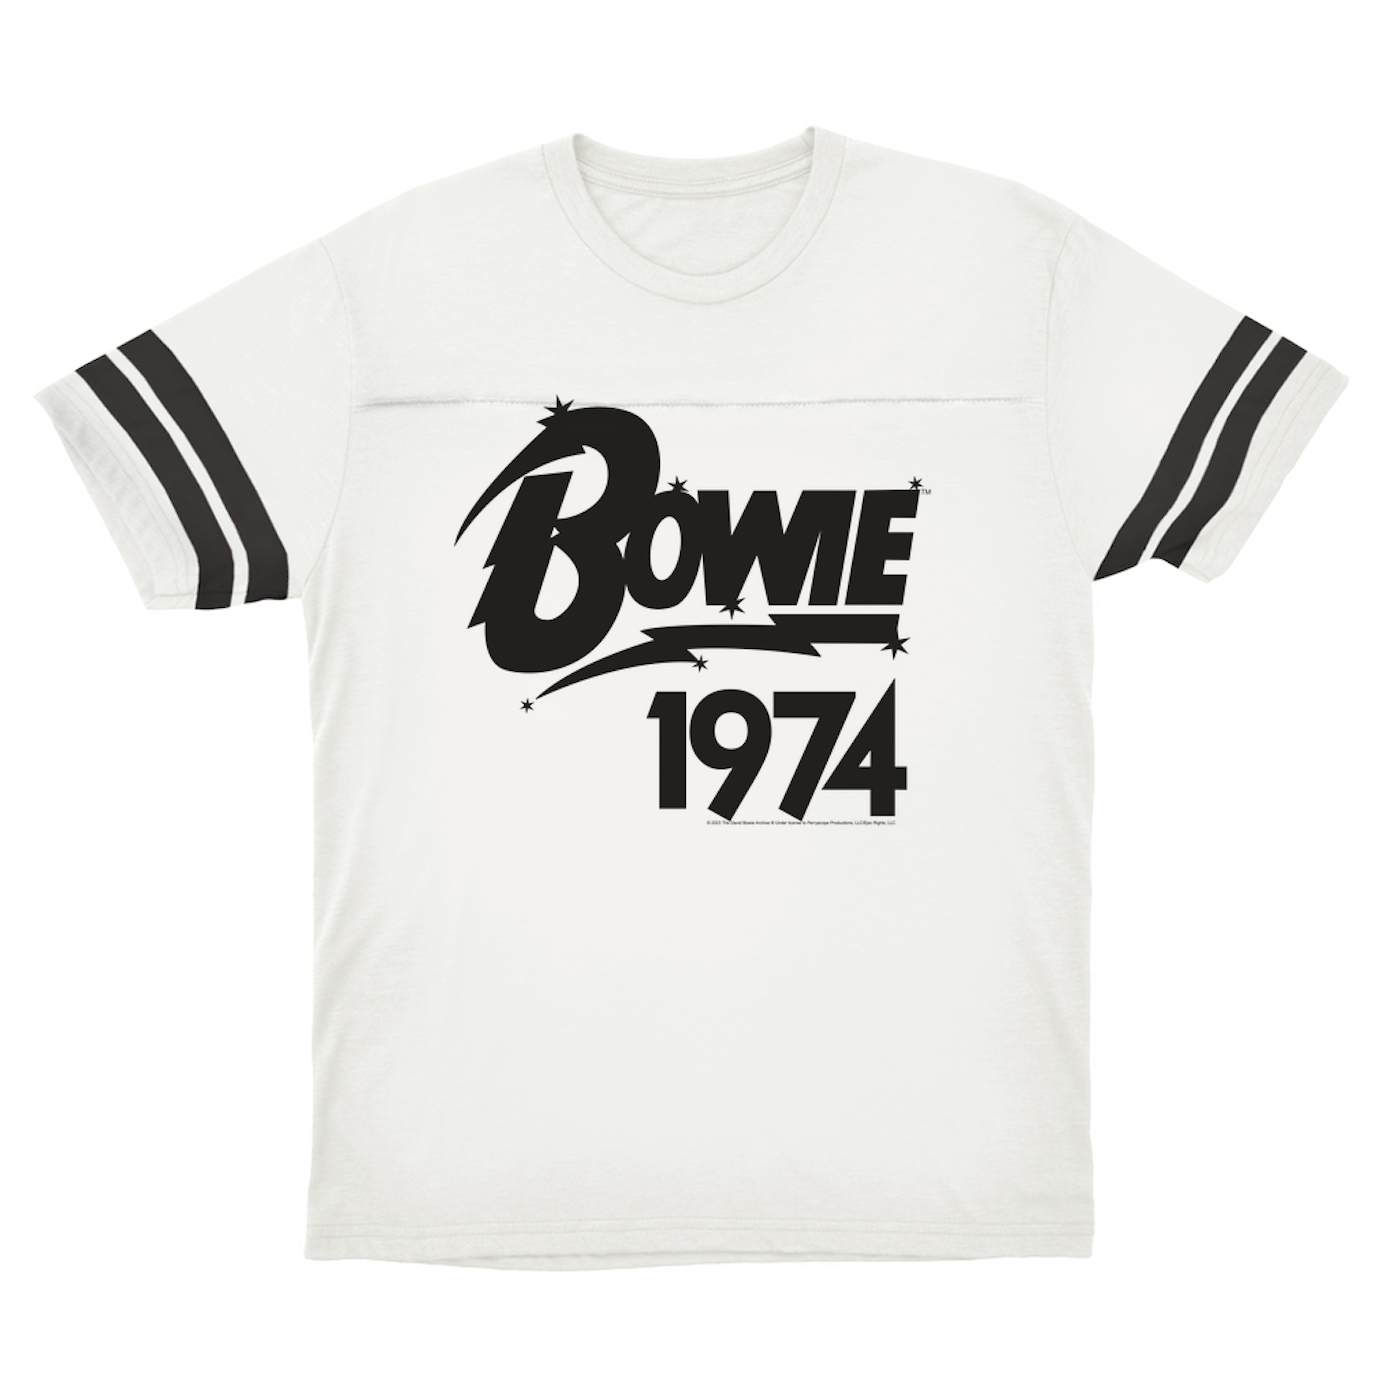 David Bowie T-Shirt | Bowie 1974 Logo (Merchbar Exclusive) David Bowie Football Shirt